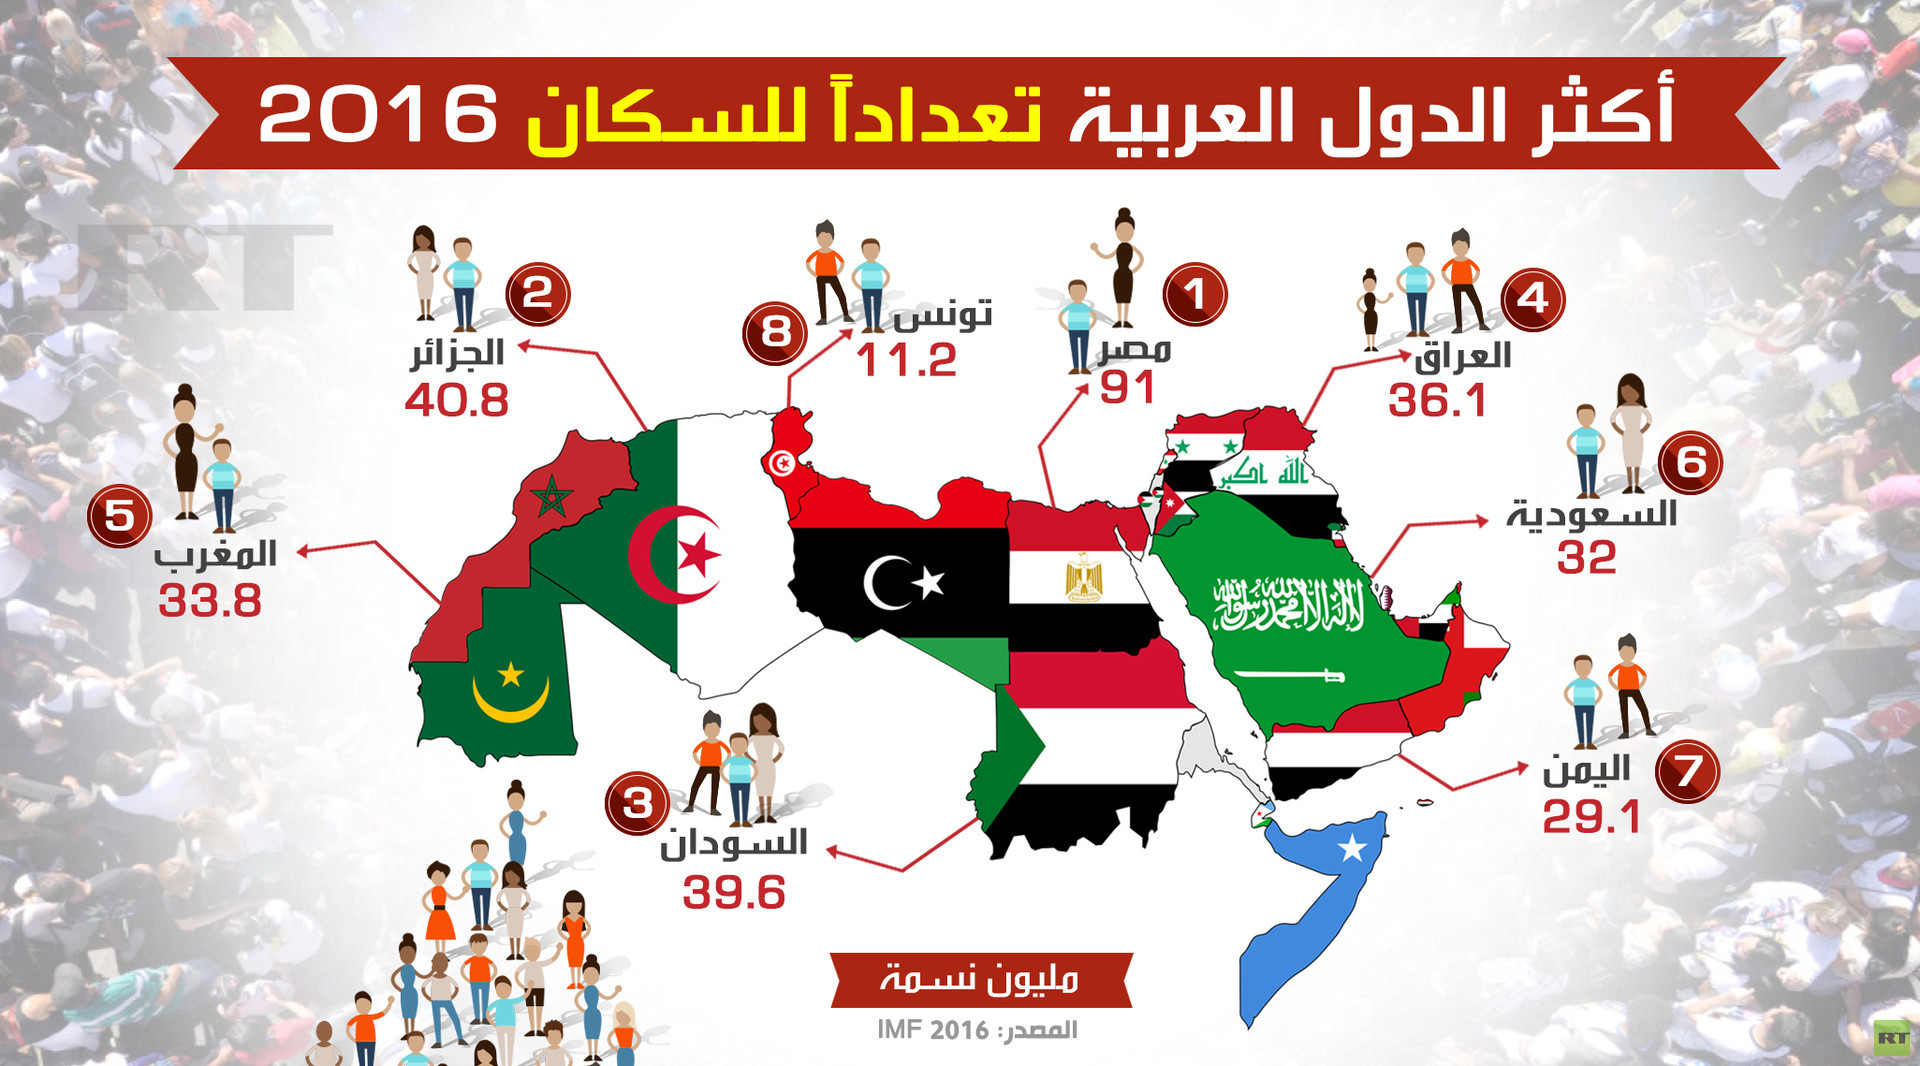 أكثر الدول العربية تعداداً للسكان 2016